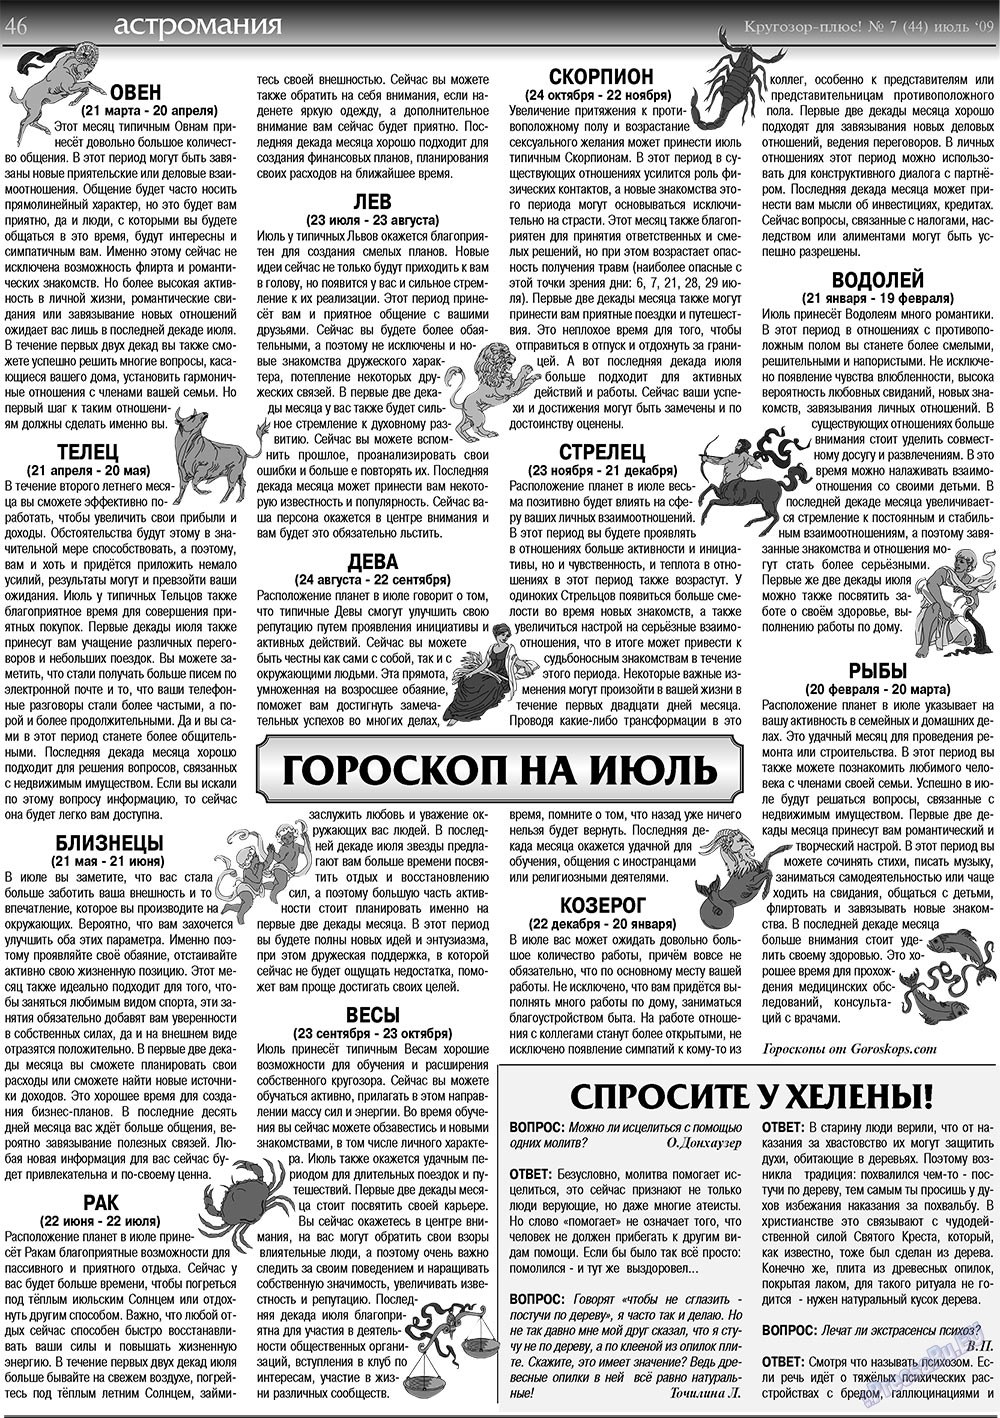 Кругозор плюс!, газета. 2009 №7 стр.46